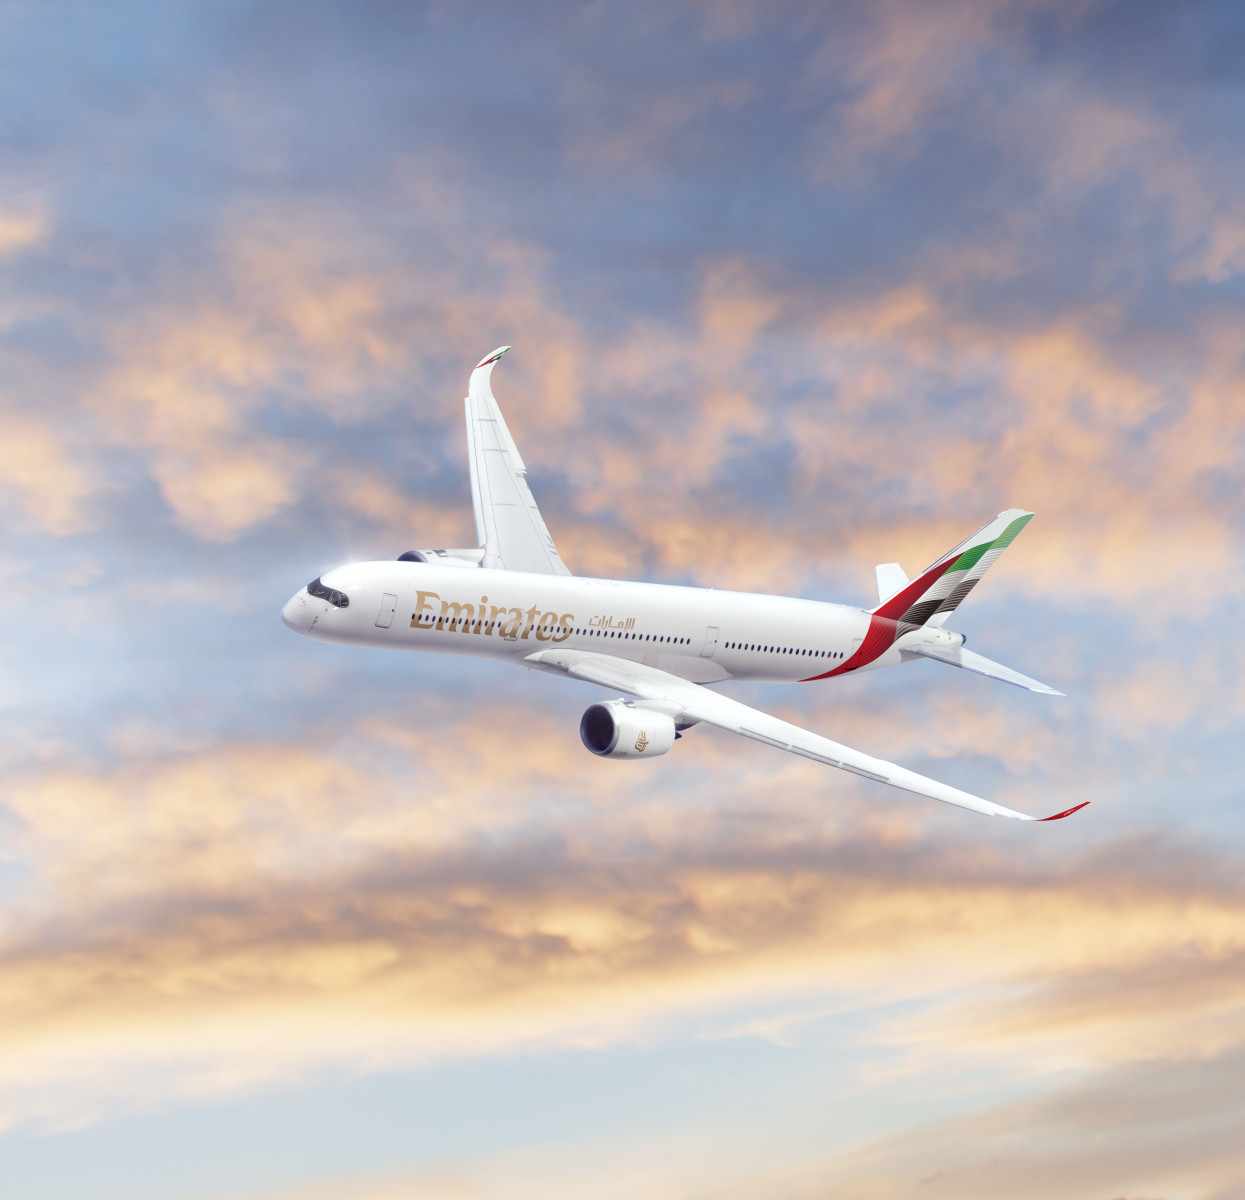 طيران الإمارات ترفع طلبيات طائرات ايرباص A 350 إلى 65 بالتعاقد على 15 طائرة جديدة

